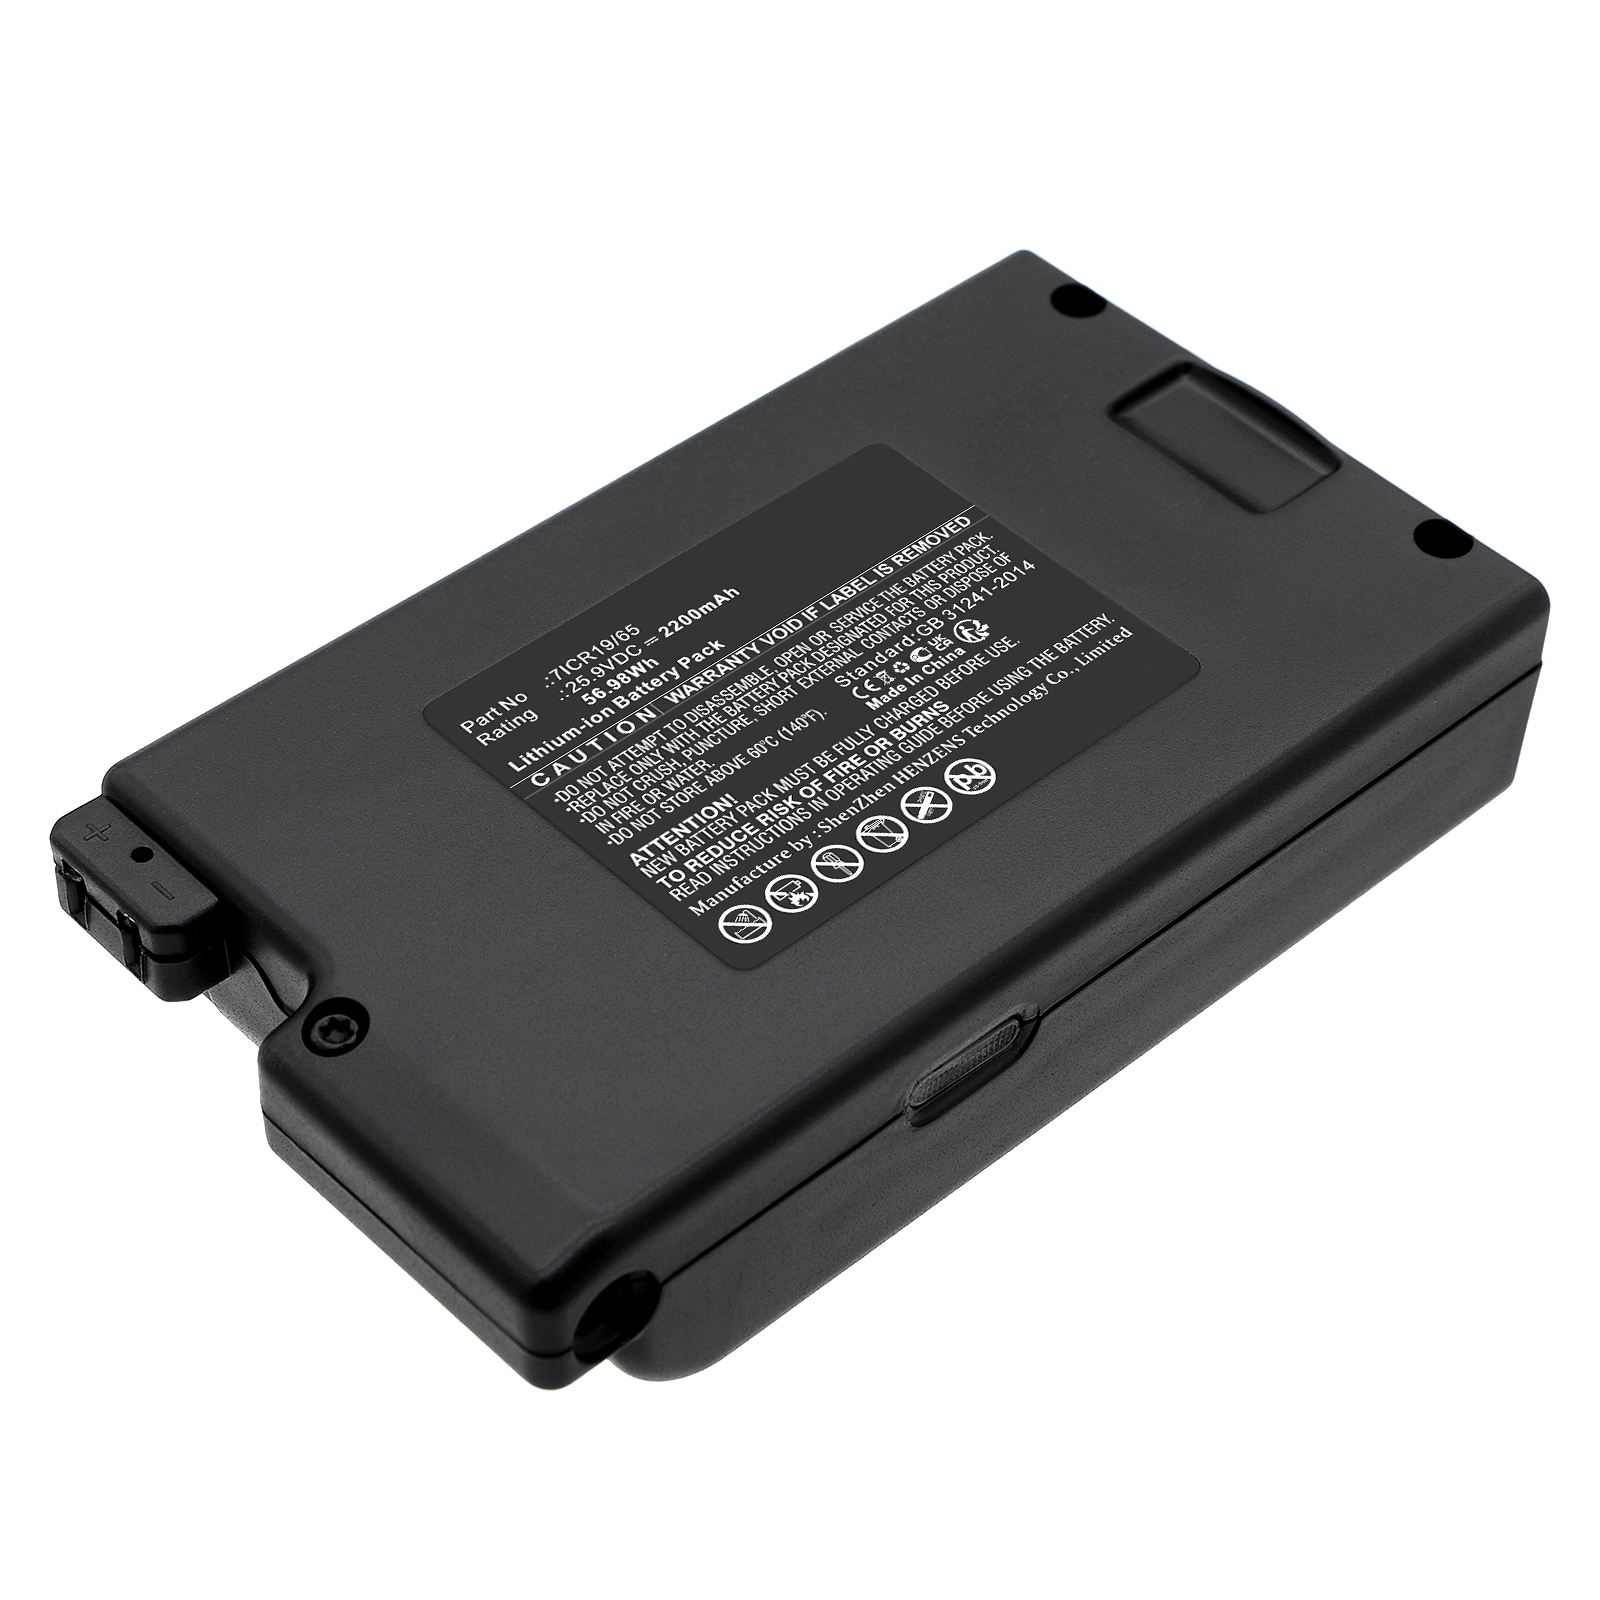 Synergy Digital Vacuum Cleaner Battery, Compatible with Proscenic 7ICR19/65 Vacuum Cleaner Battery (Li-ion, 25.9V, 2200mAh)